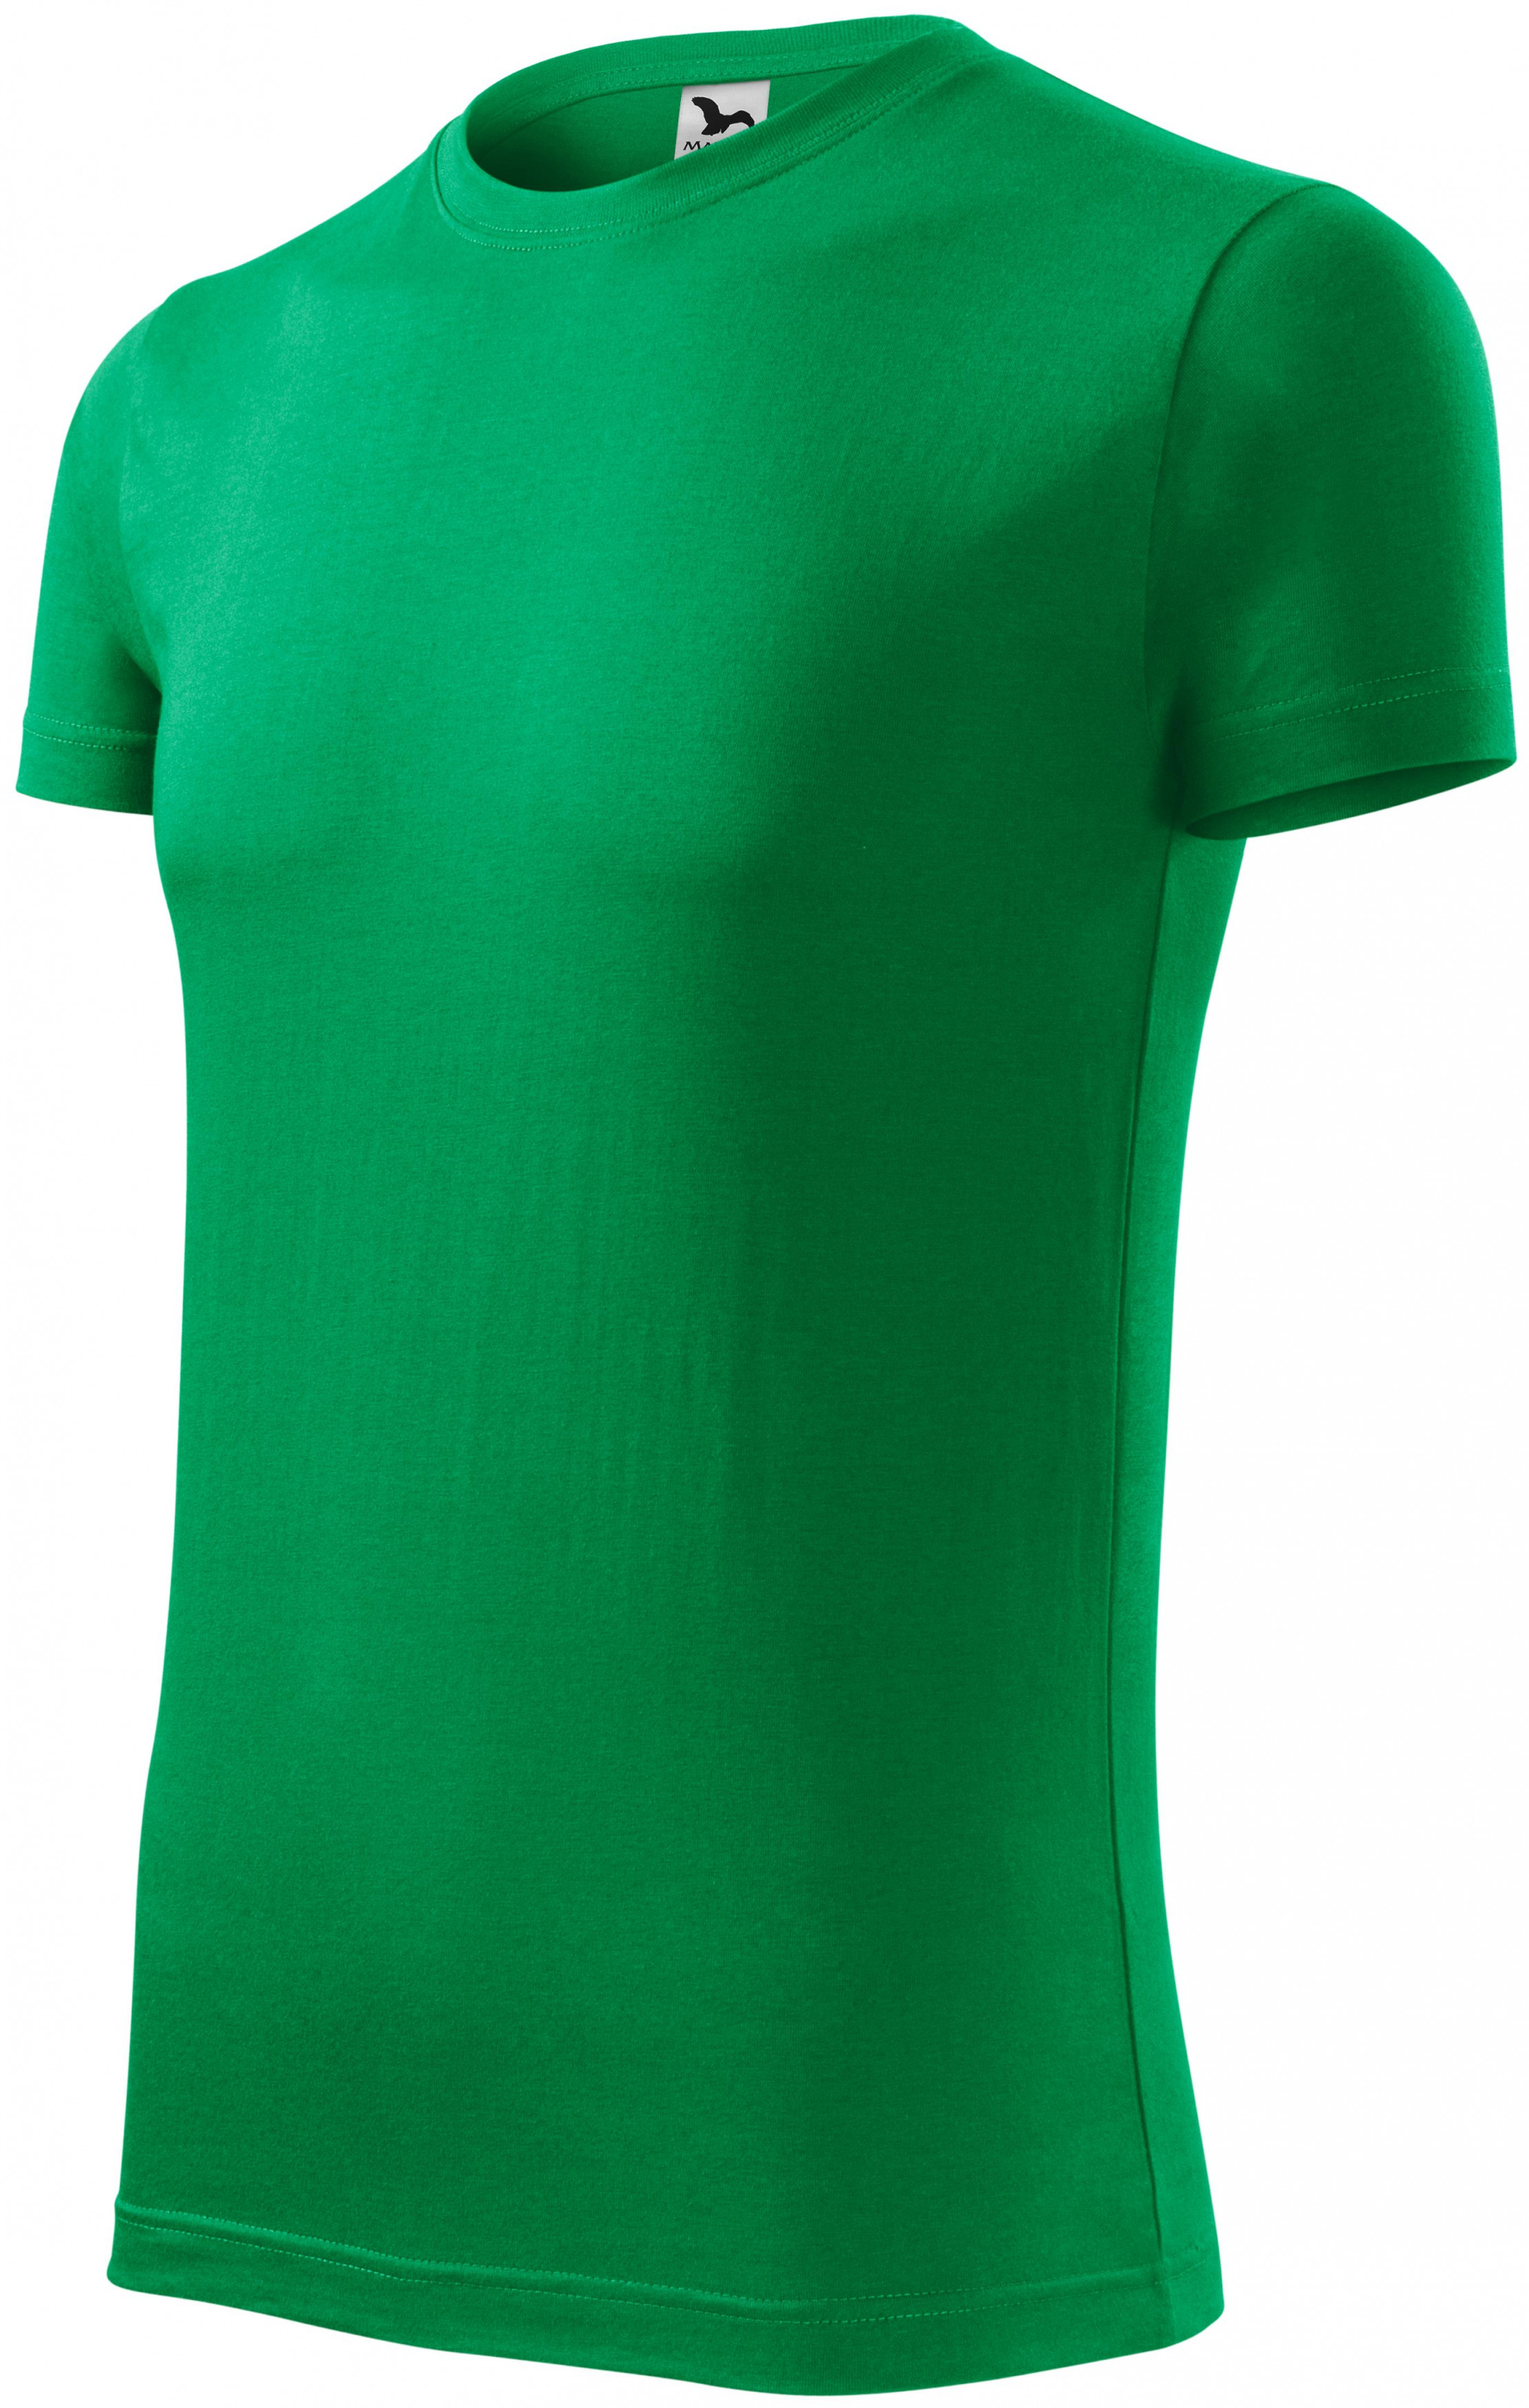 Pánske módne tričko, trávová zelená, S